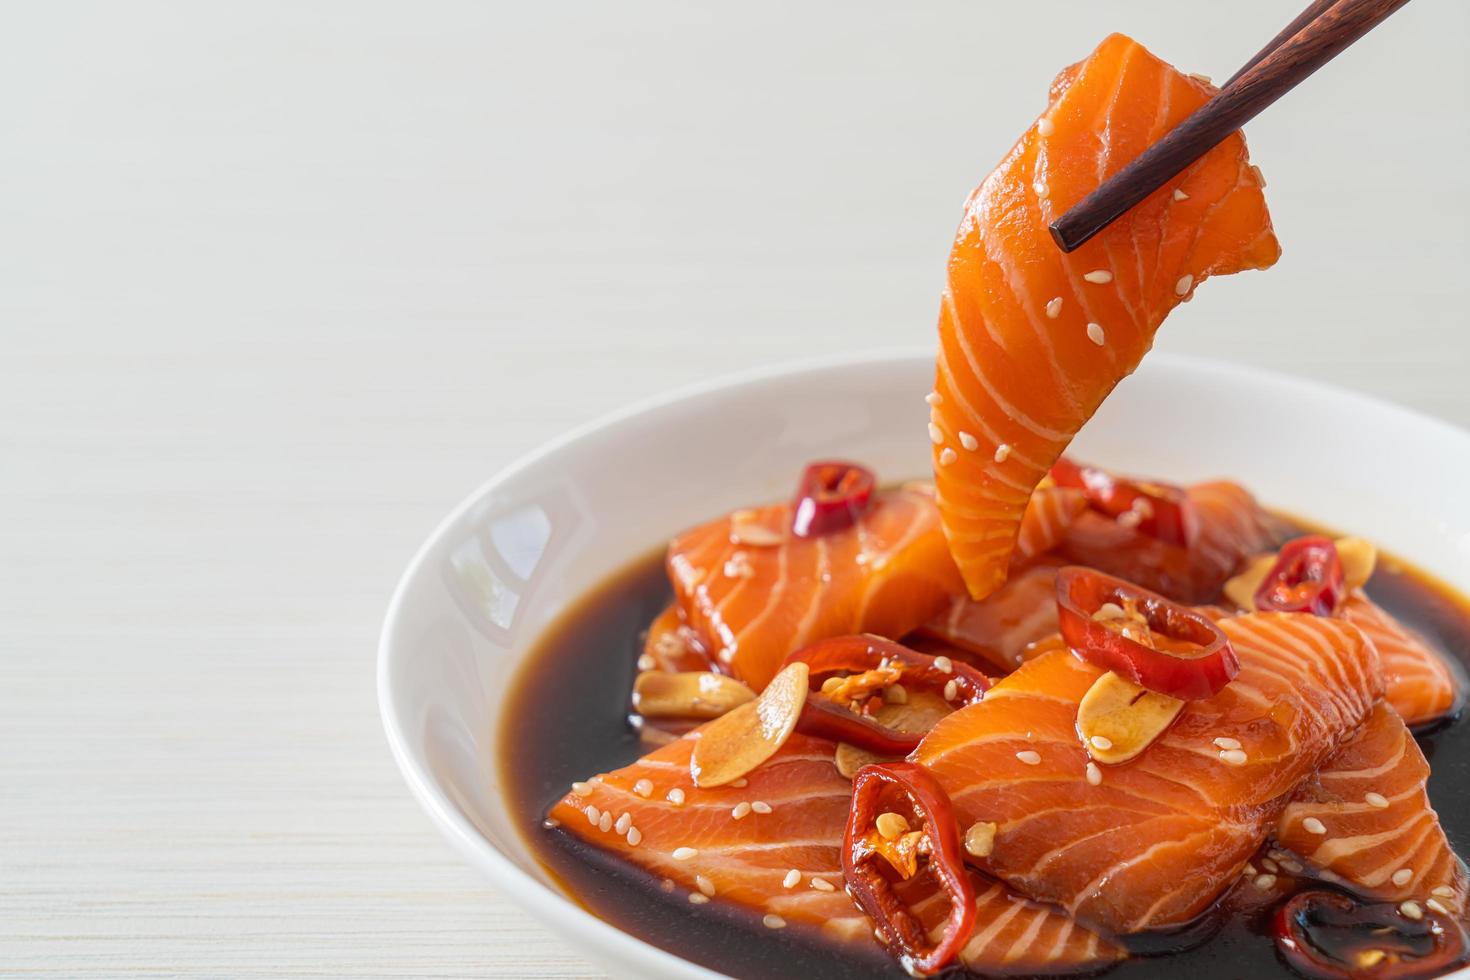 färsk lax rå picklad i shoyusås foto